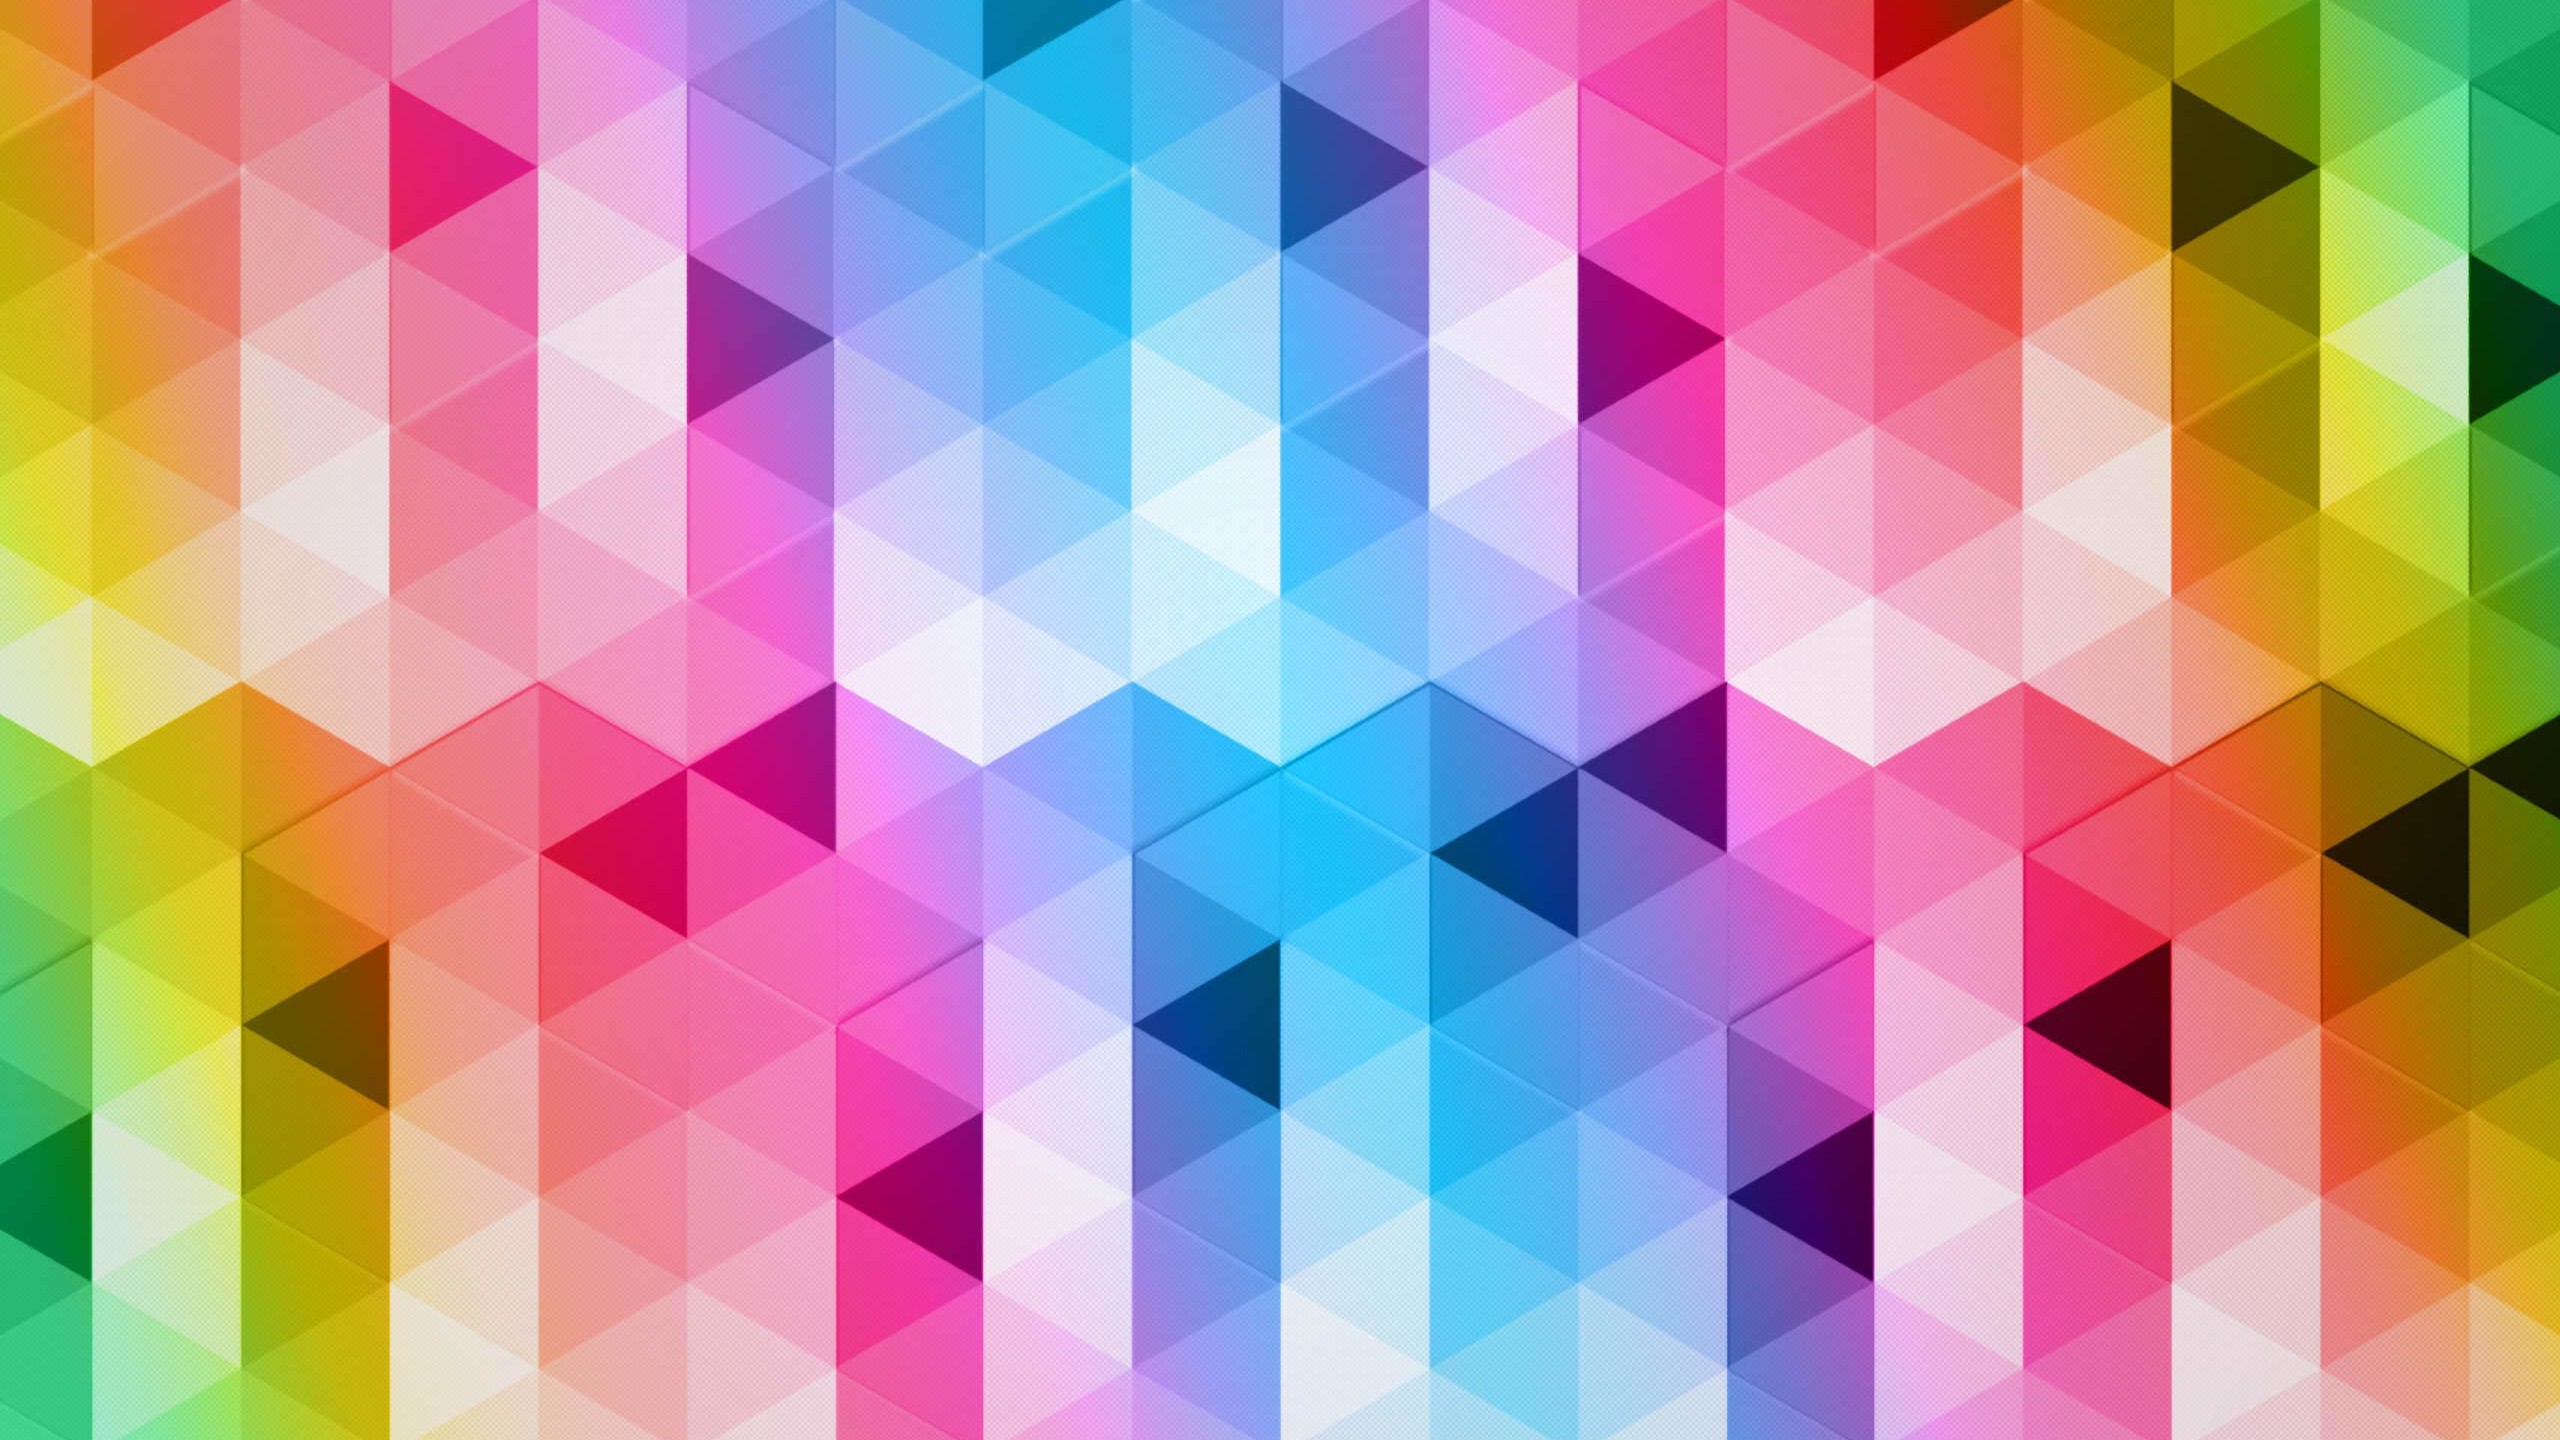 Triangular Grads Wallpaper for Desktop 2560x1440